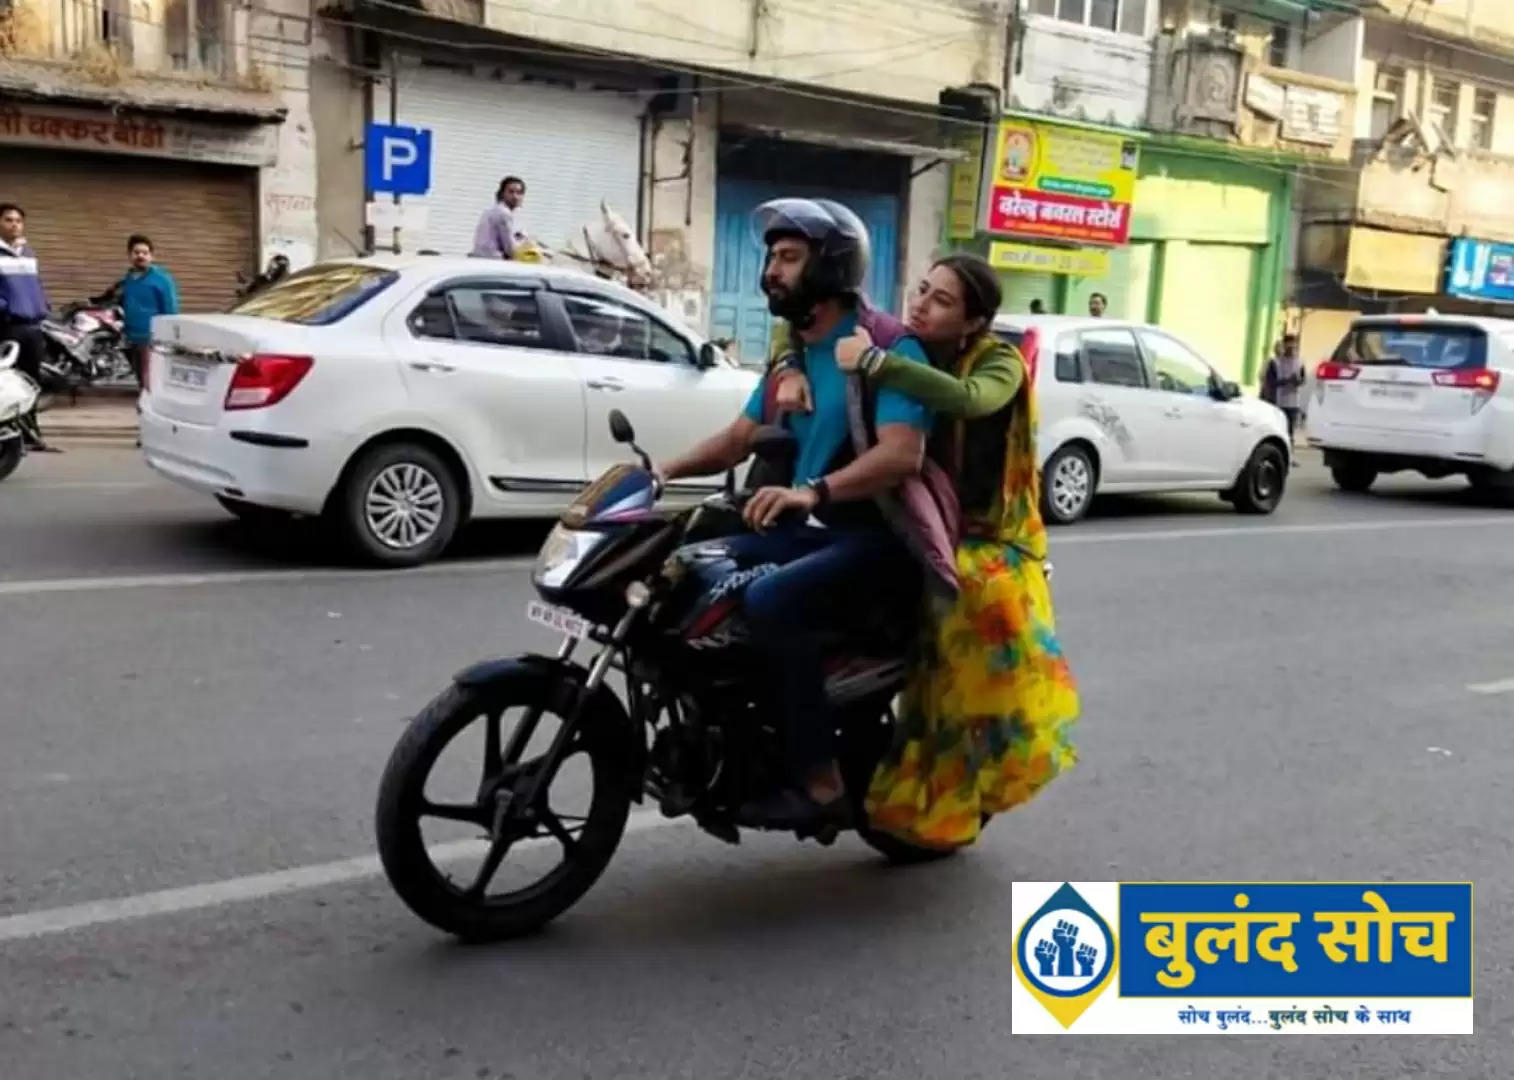 विक्की कौशल संग सारा(sara) का वीडियो हुआ वायरल, इंदौर(indoer) की सड़कों में बाइक में घूमते नज़र आये दोनों